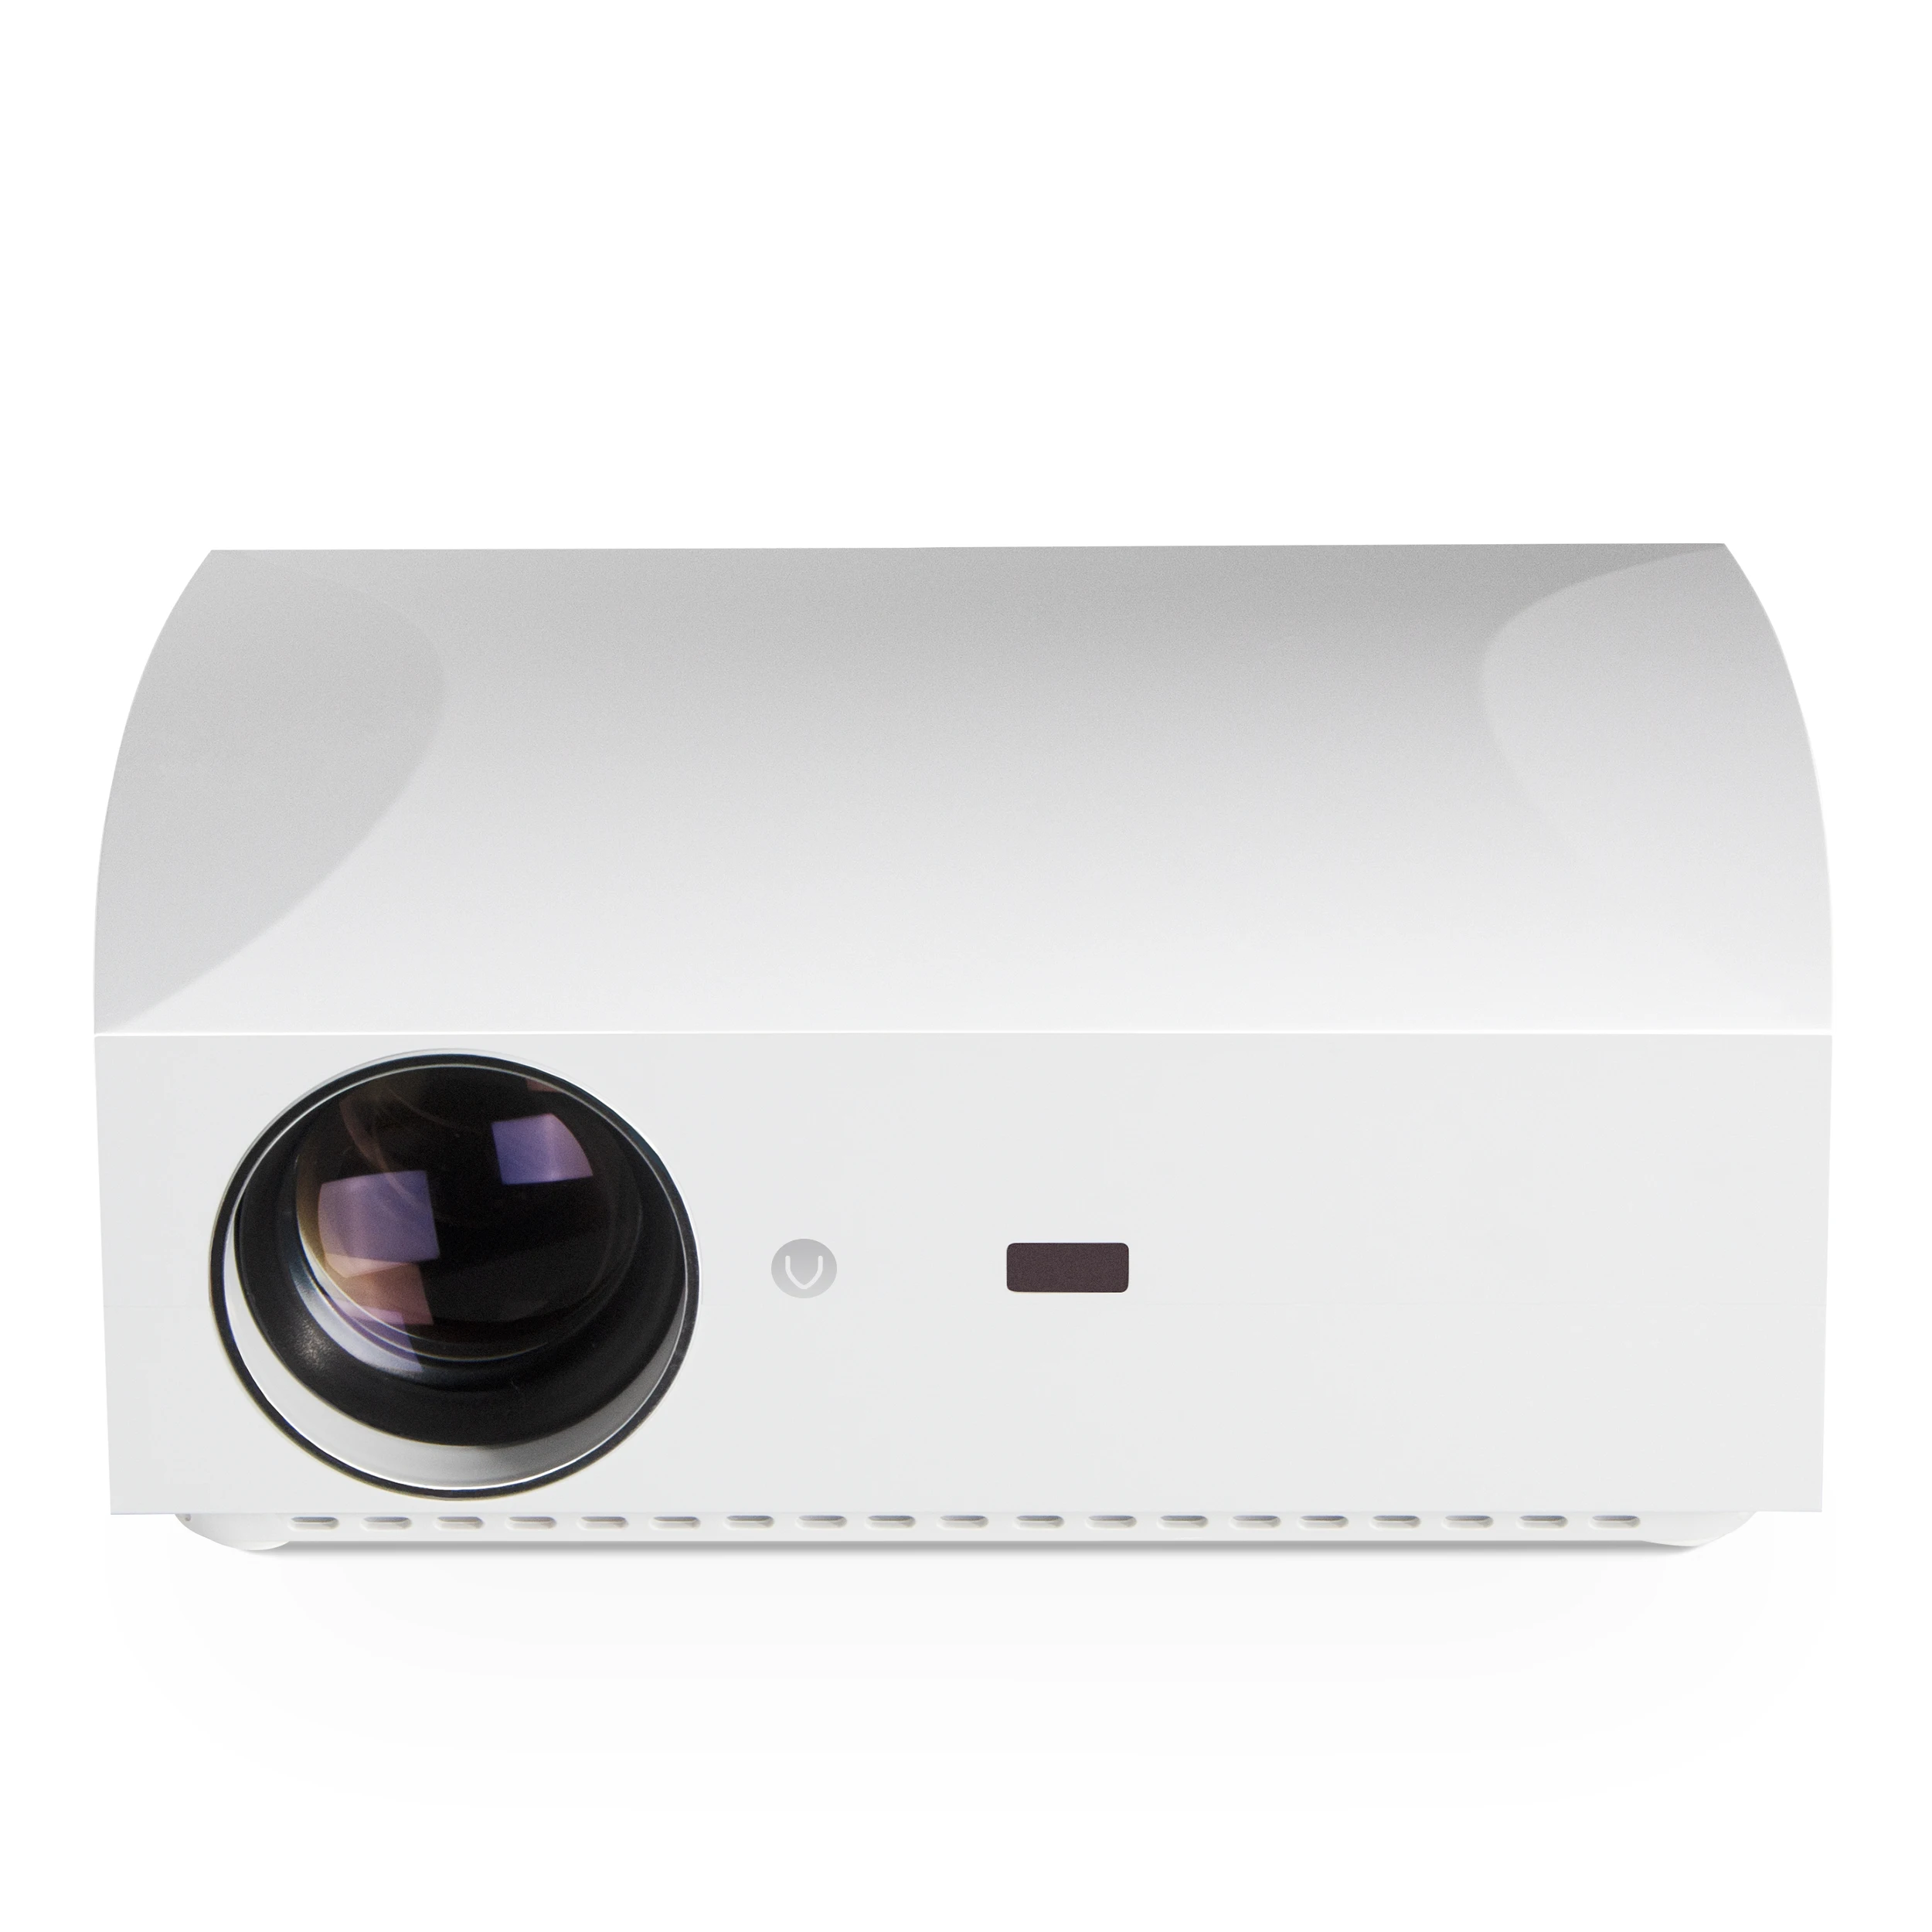 

Vivibright F30 LCD 1080P projector